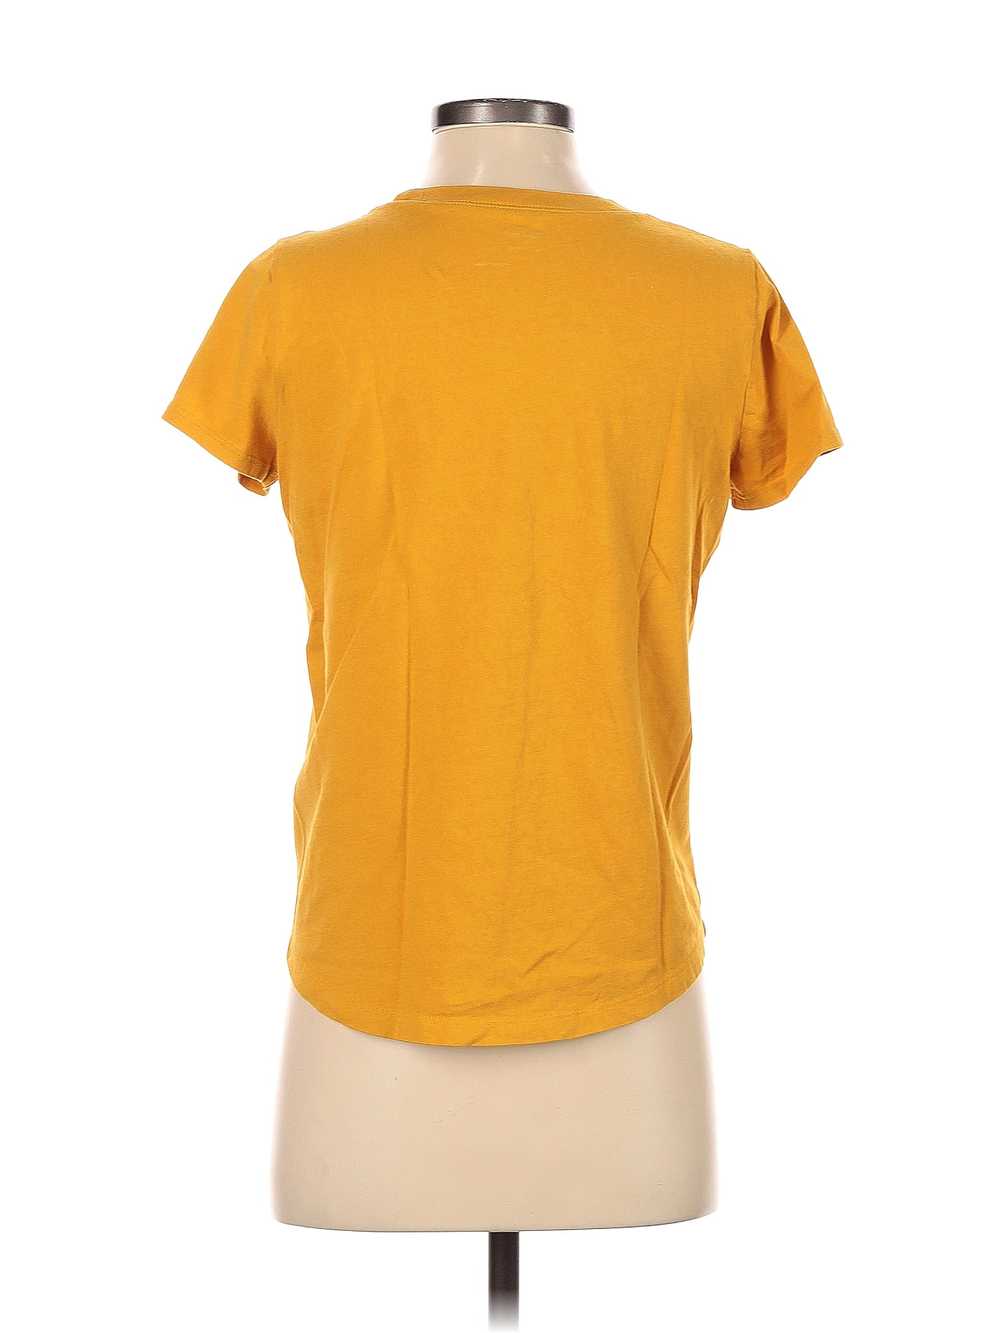 Madewell Women Yellow Short Sleeve T-Shirt S - image 2